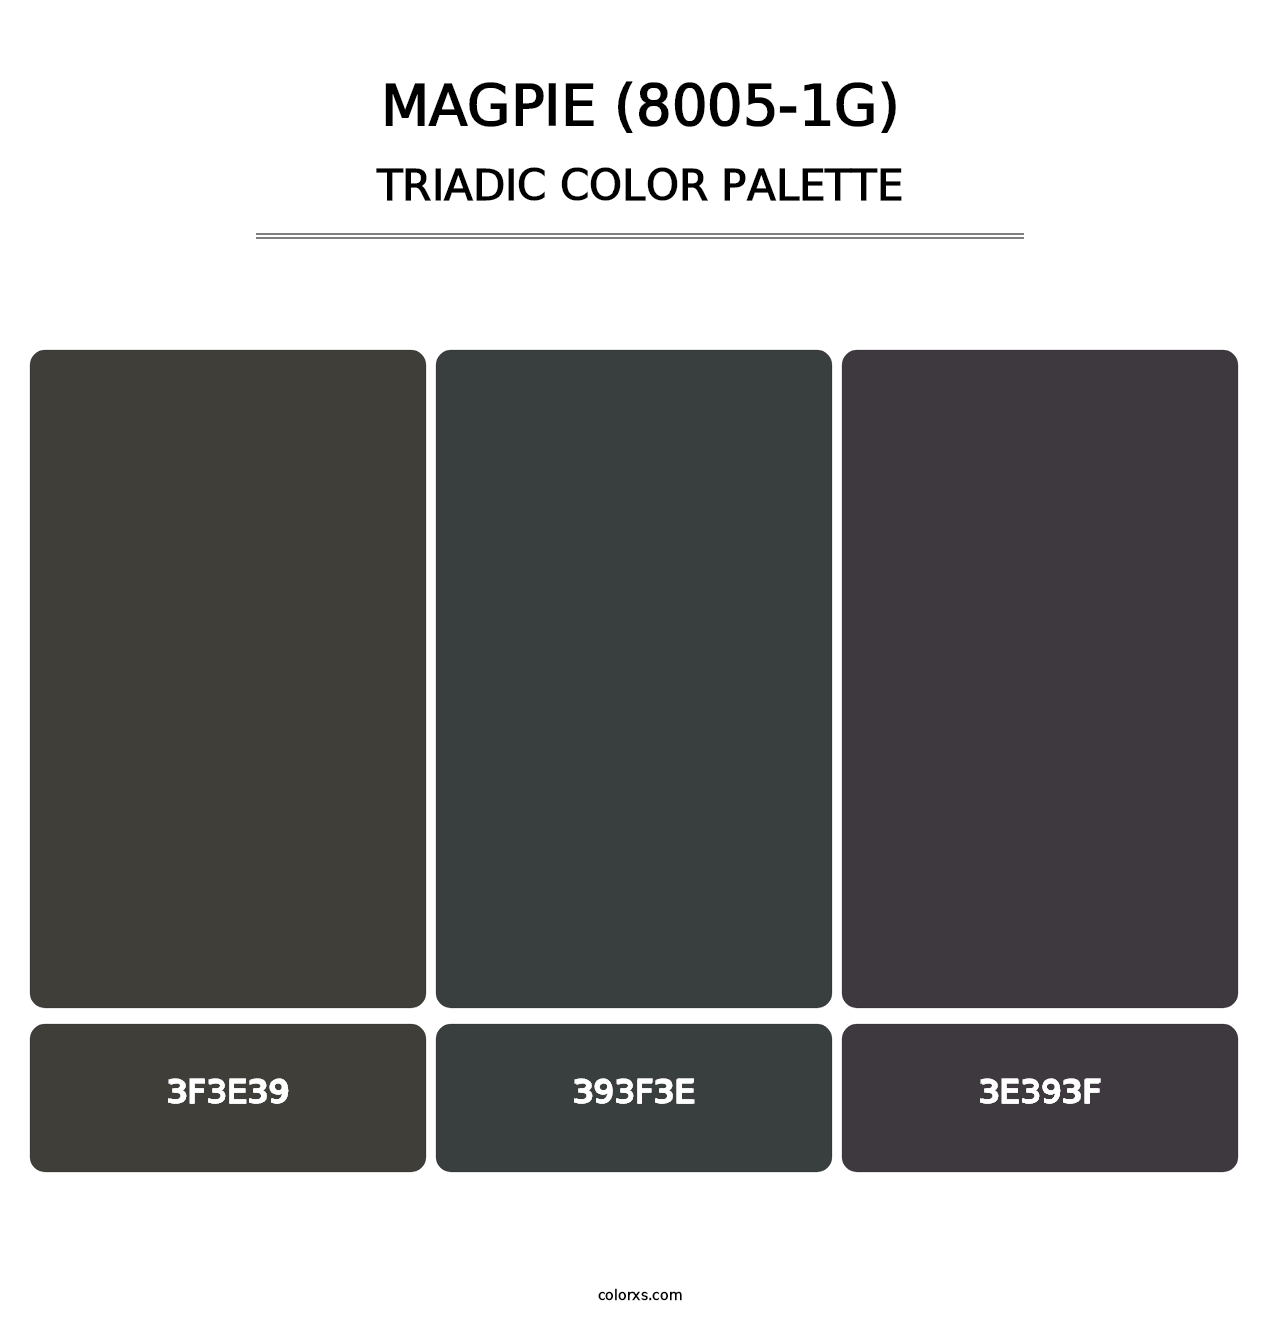 Magpie (8005-1G) - Triadic Color Palette